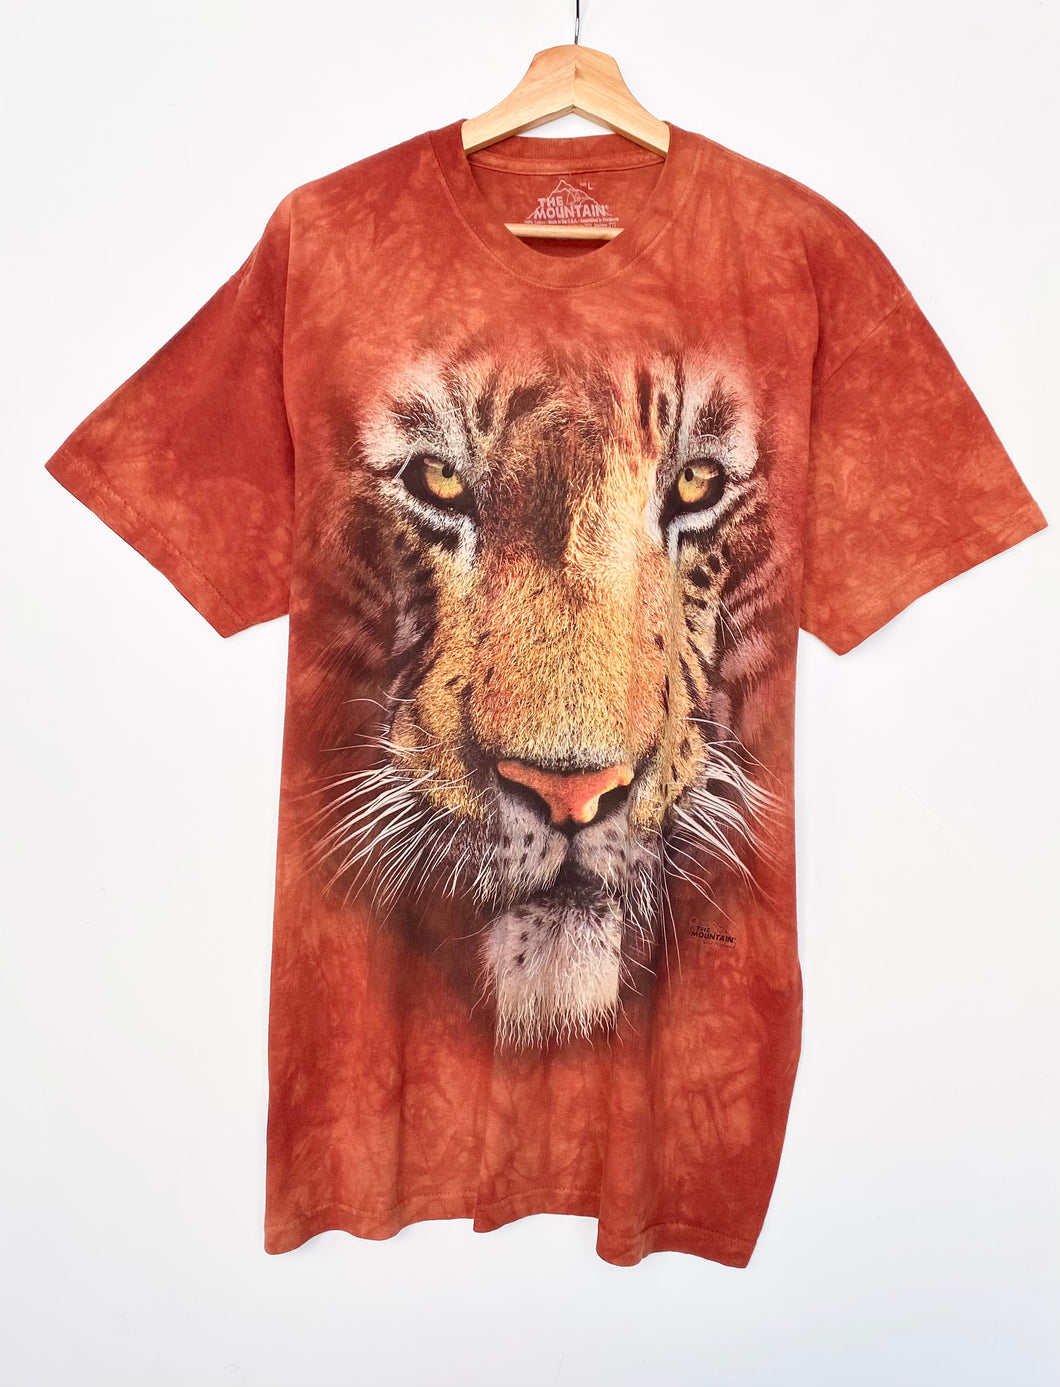 Bengal Tiger Tie-Dye T-shirt (L)